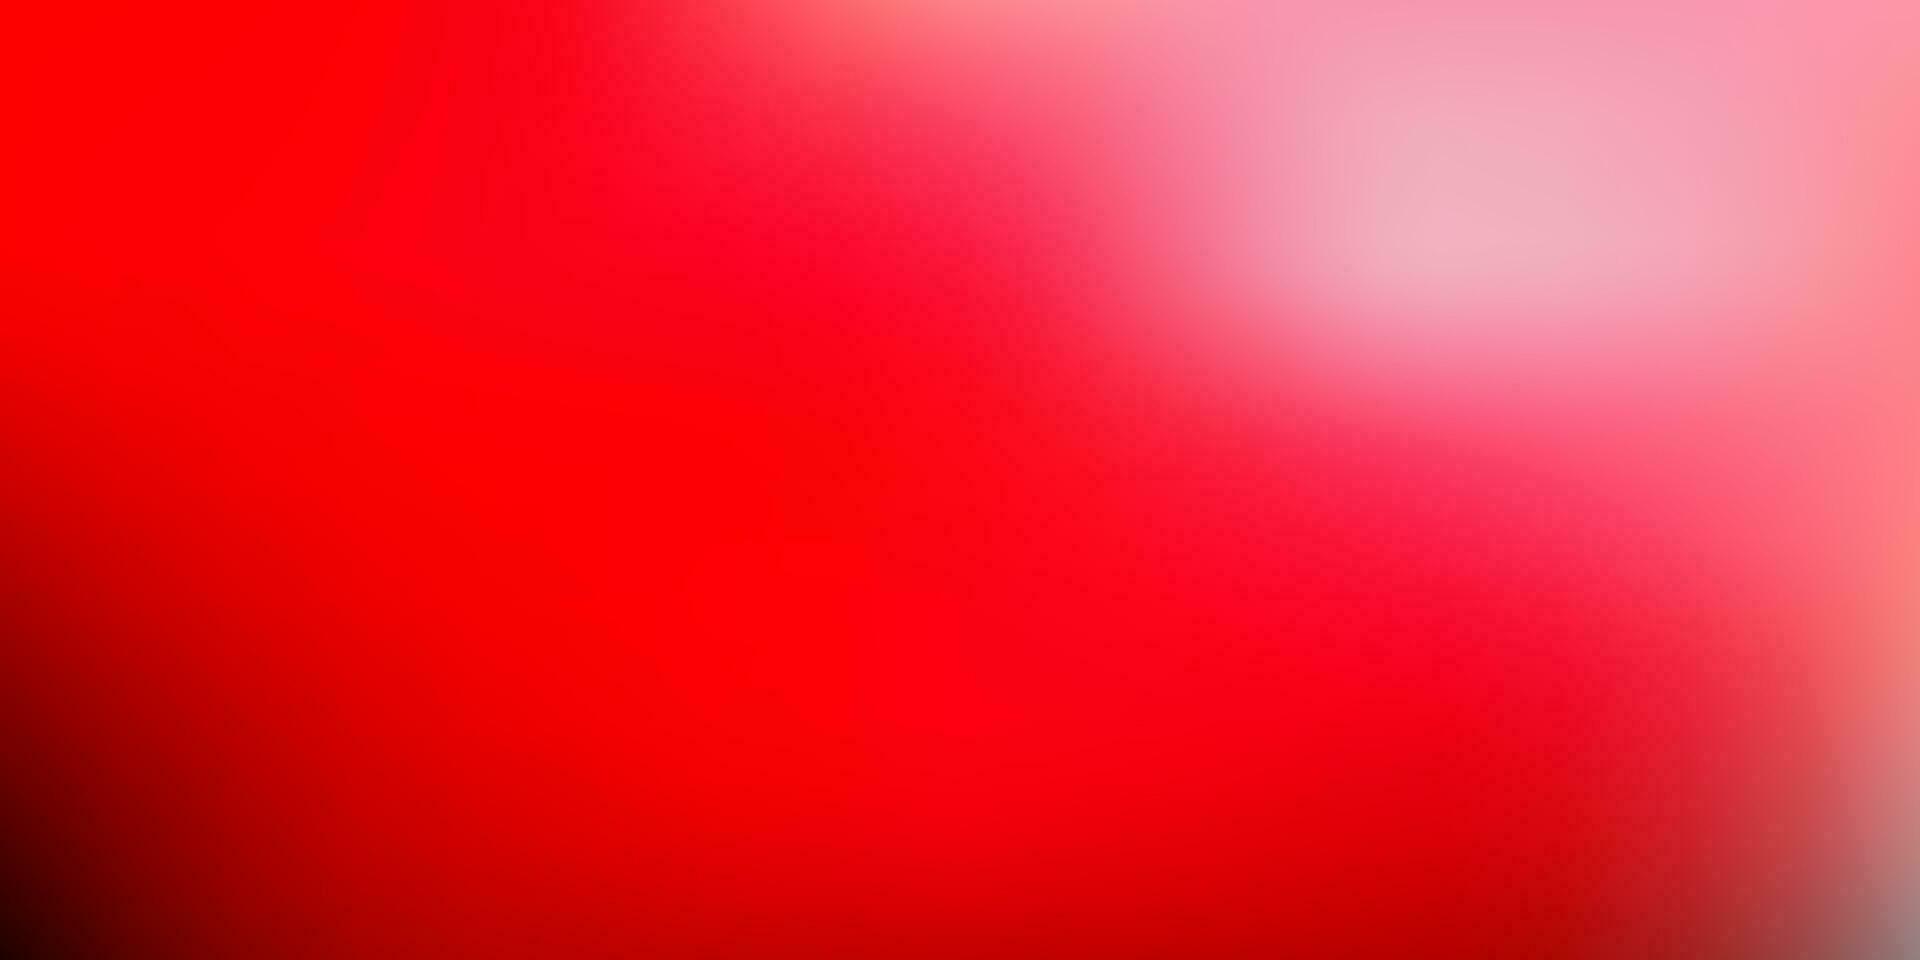 ljusrosa, röd vektor gradient oskärpa ritning.